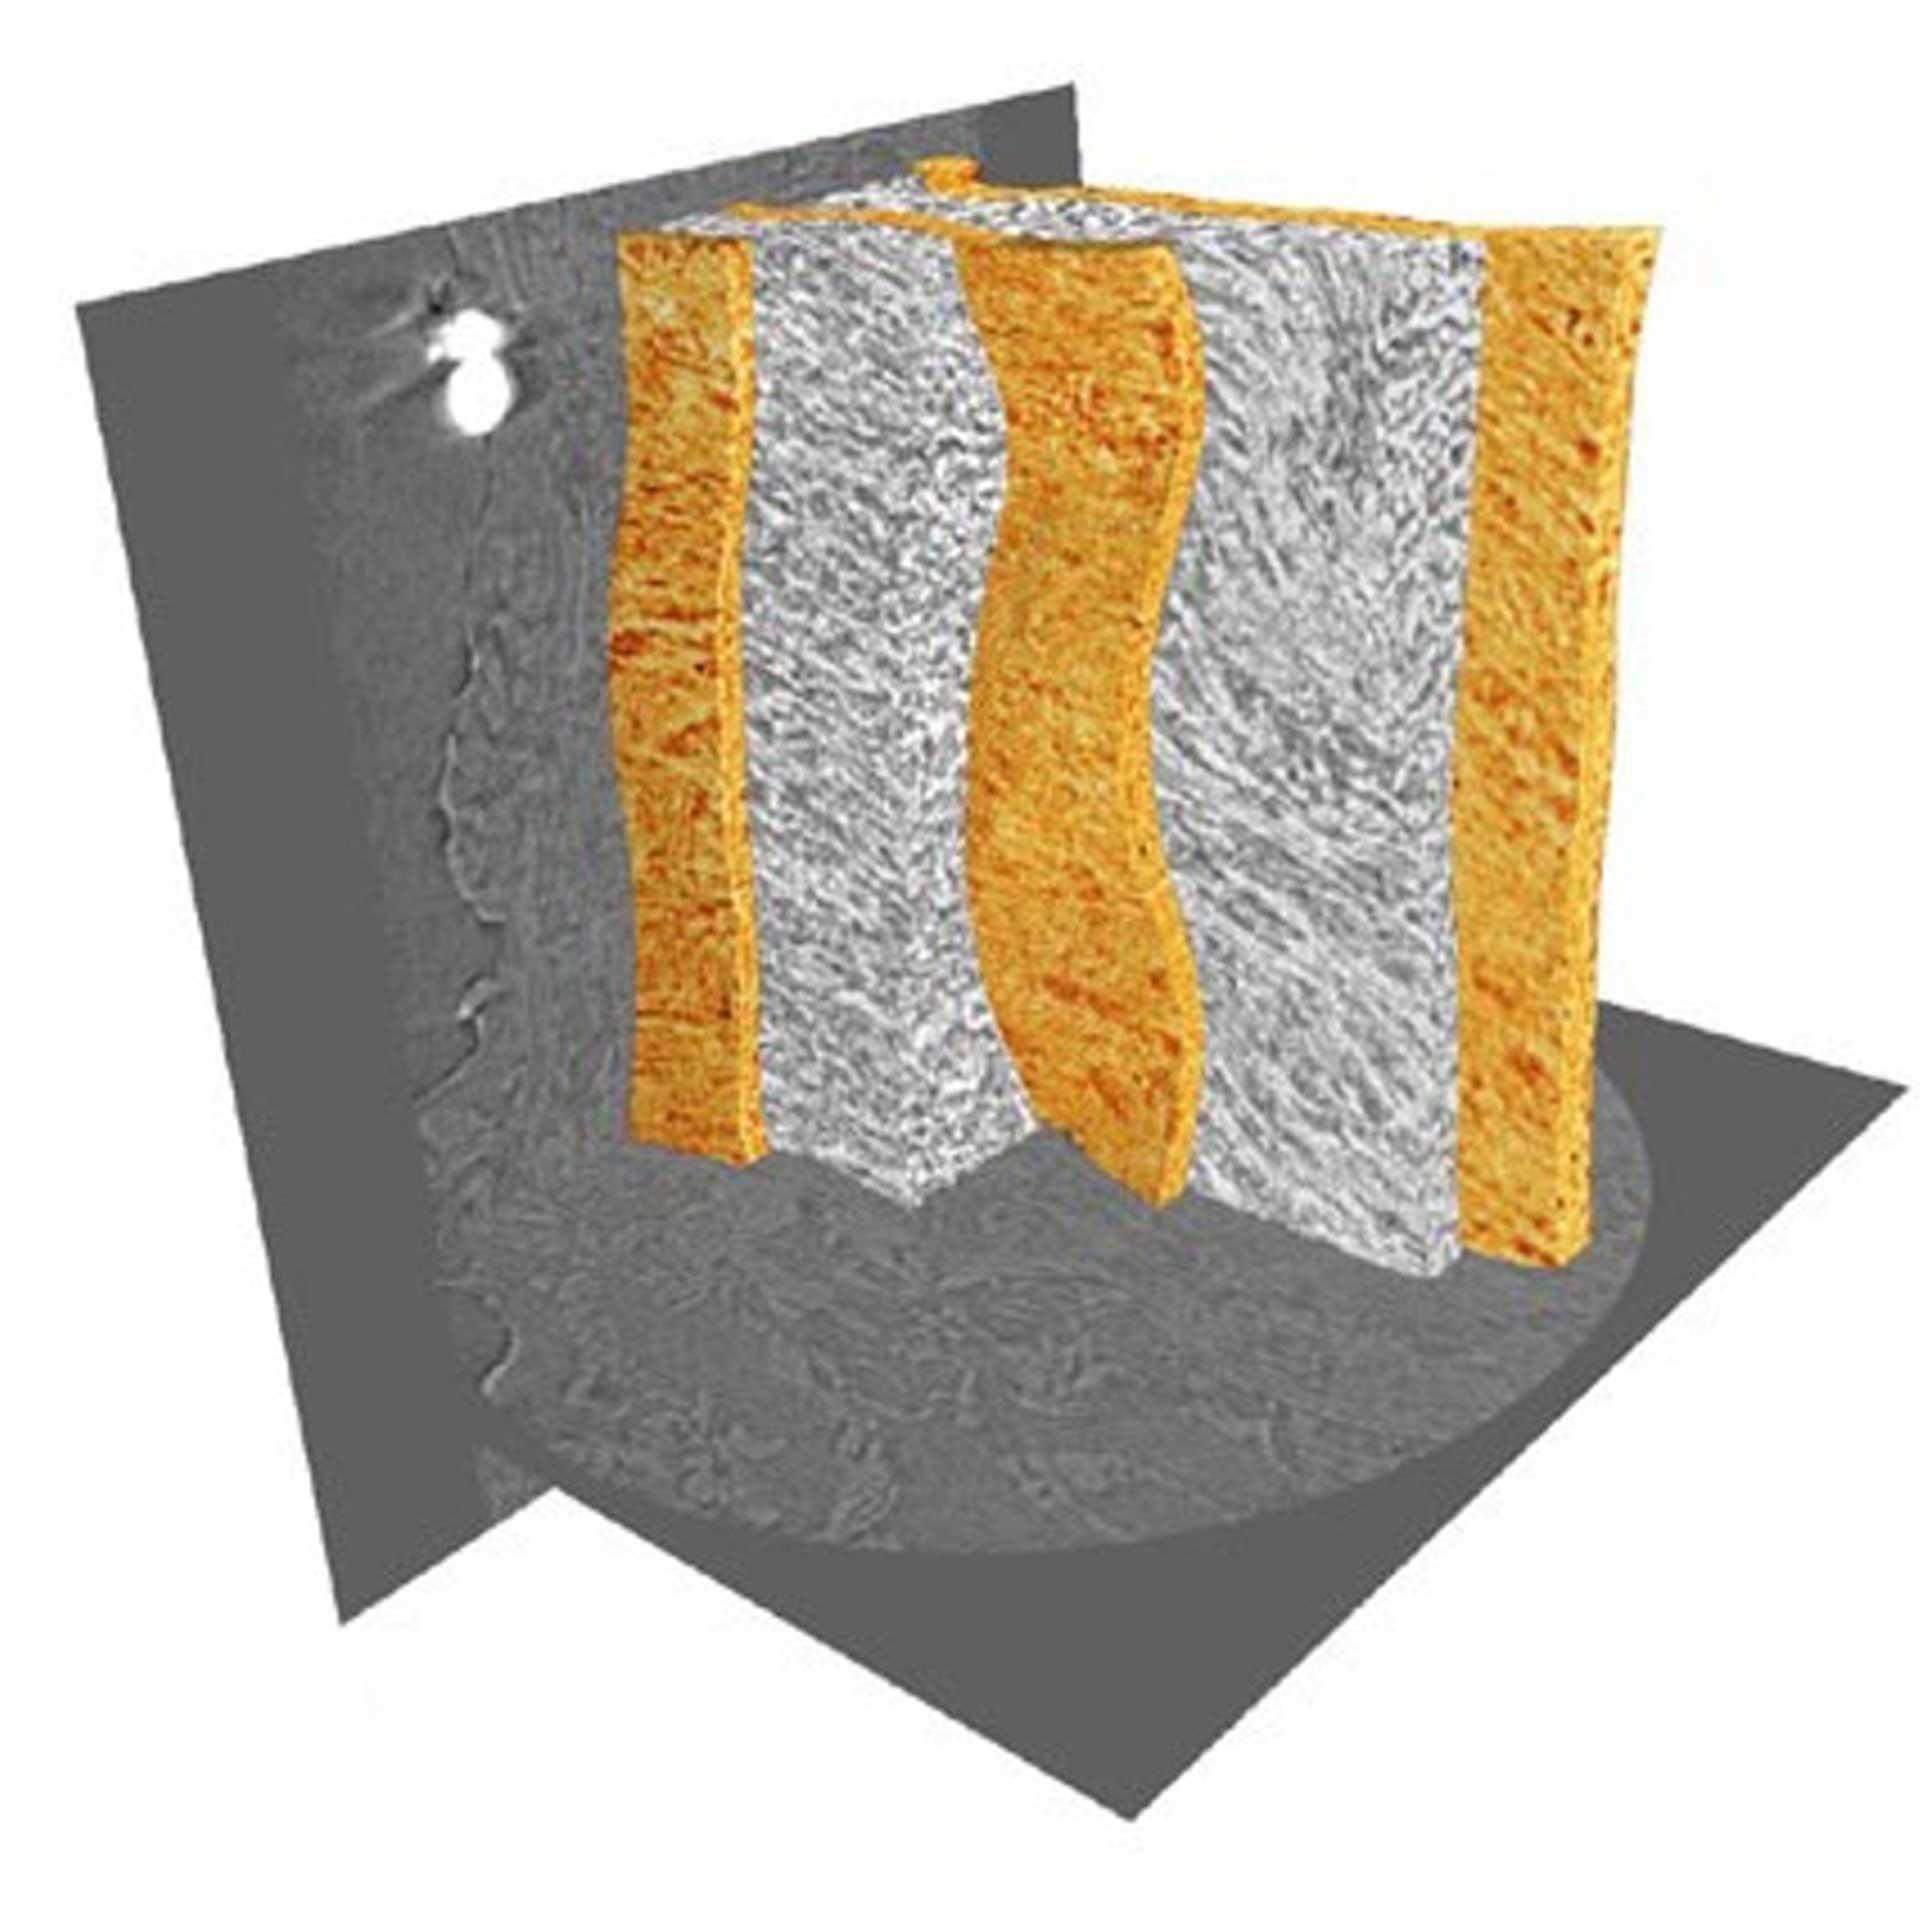 Elastische Lamellen (orange) und zwischenlamellare Bereiche in ungefärbtem Ratten-Arterienwandgewebe. Abbildung mit Xradia 800 Ultra. Bild mit freundlicher Genehmigung der University of Manchester, Großbritannien (Probenbreite 90 µm).